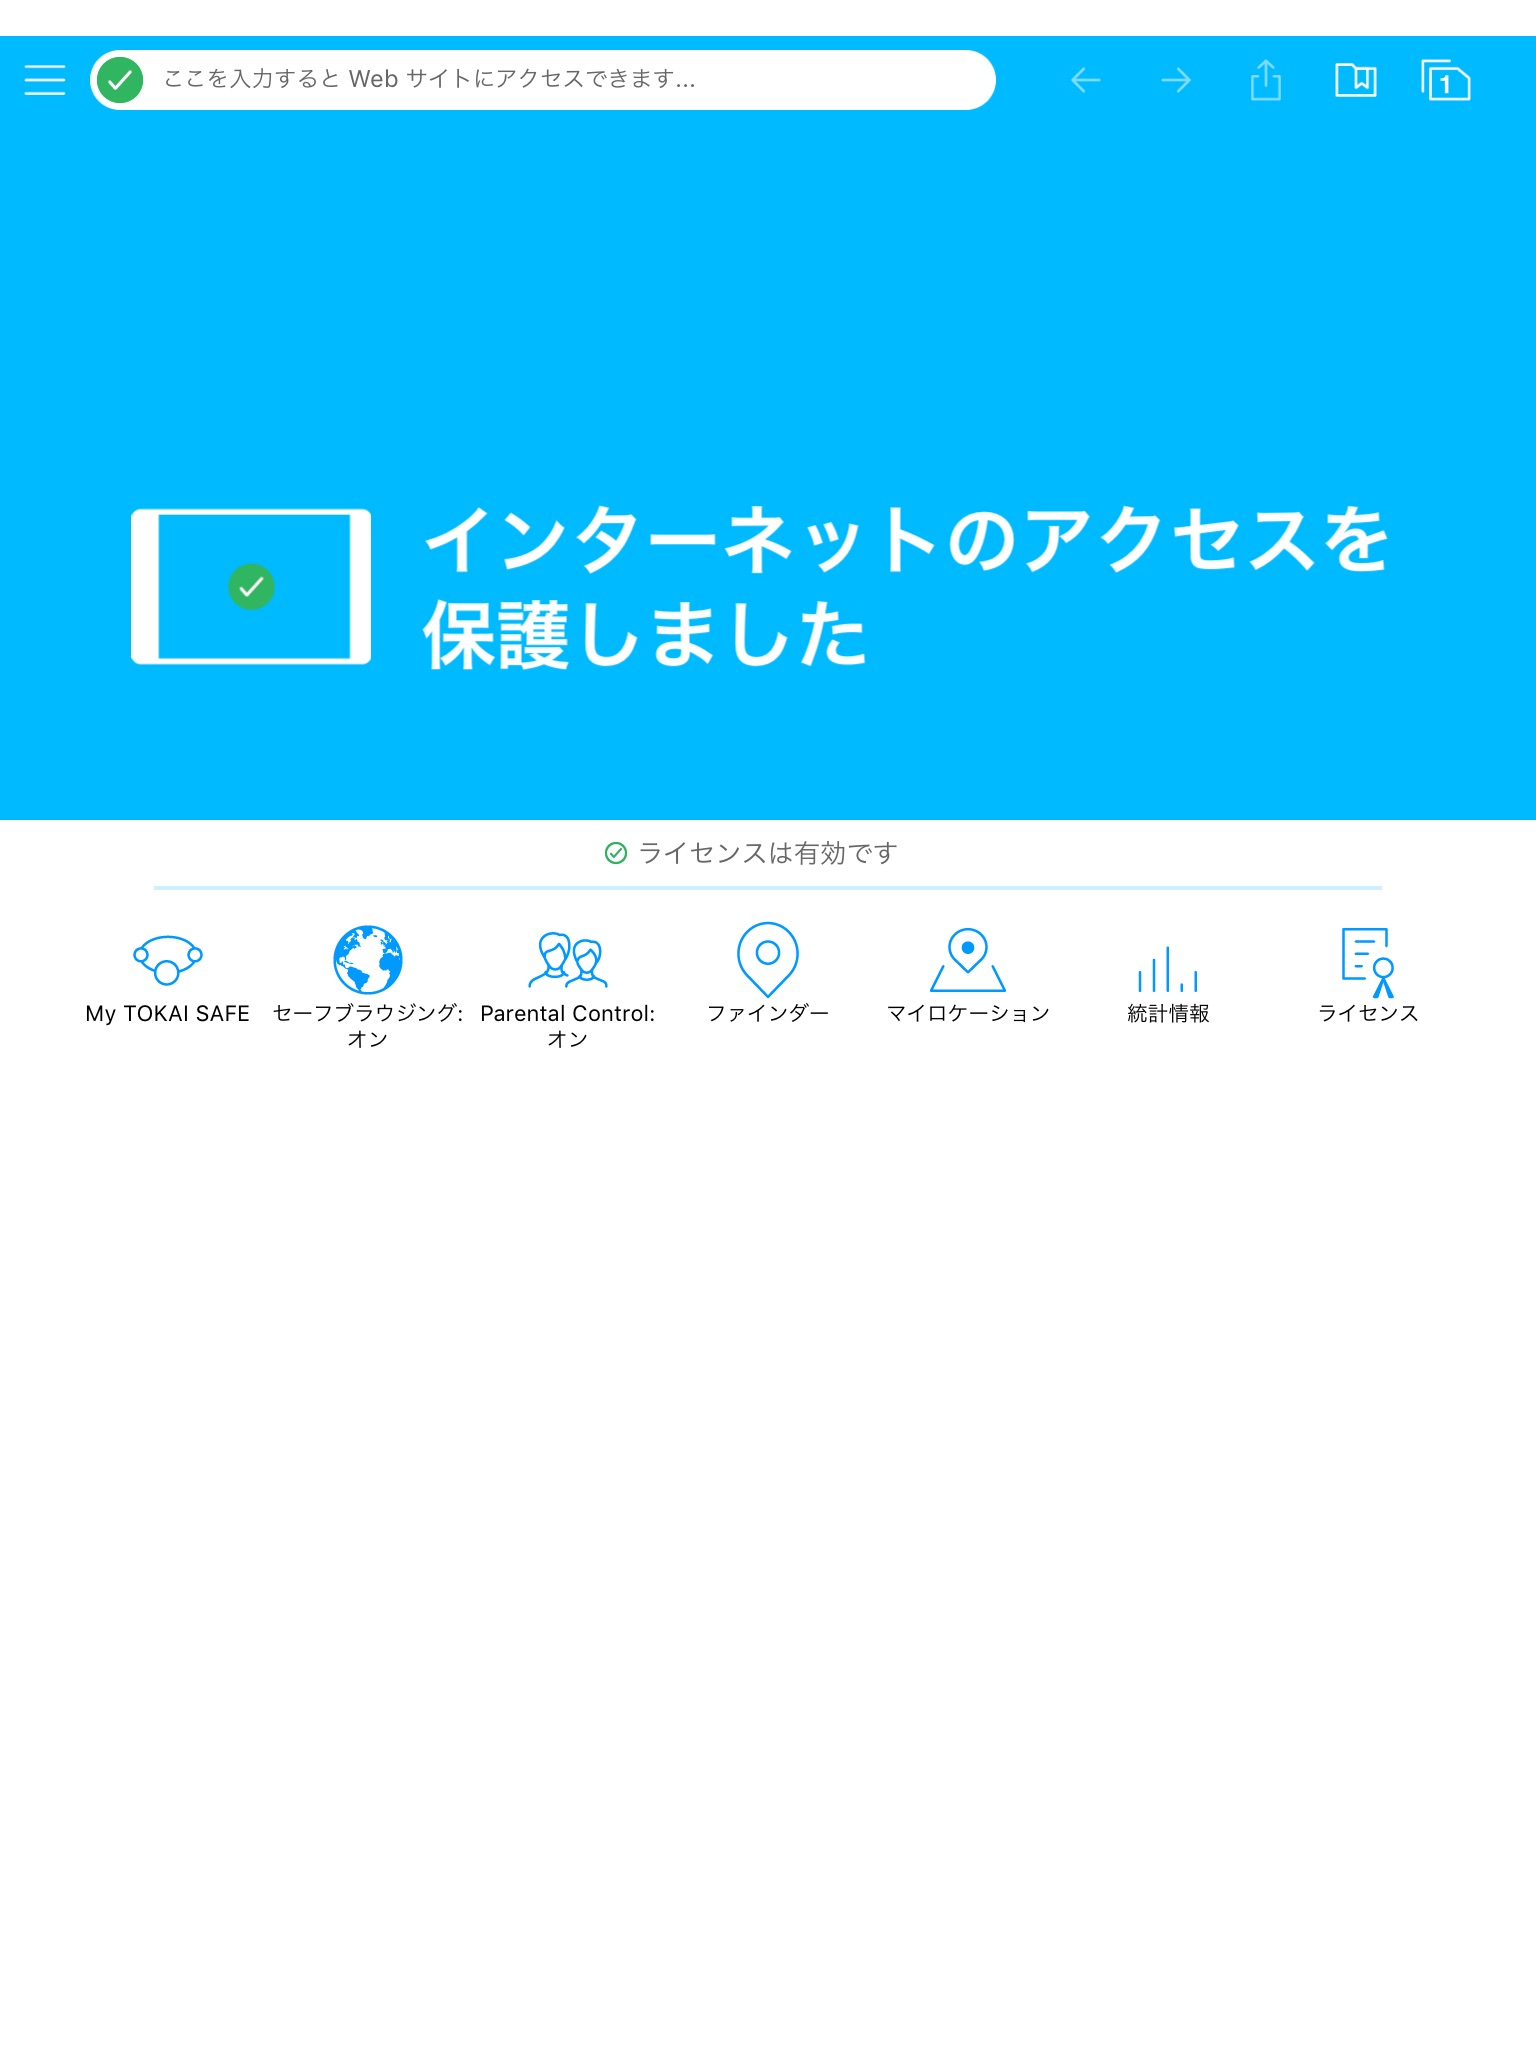 TOKAI SAFE screenshot 3